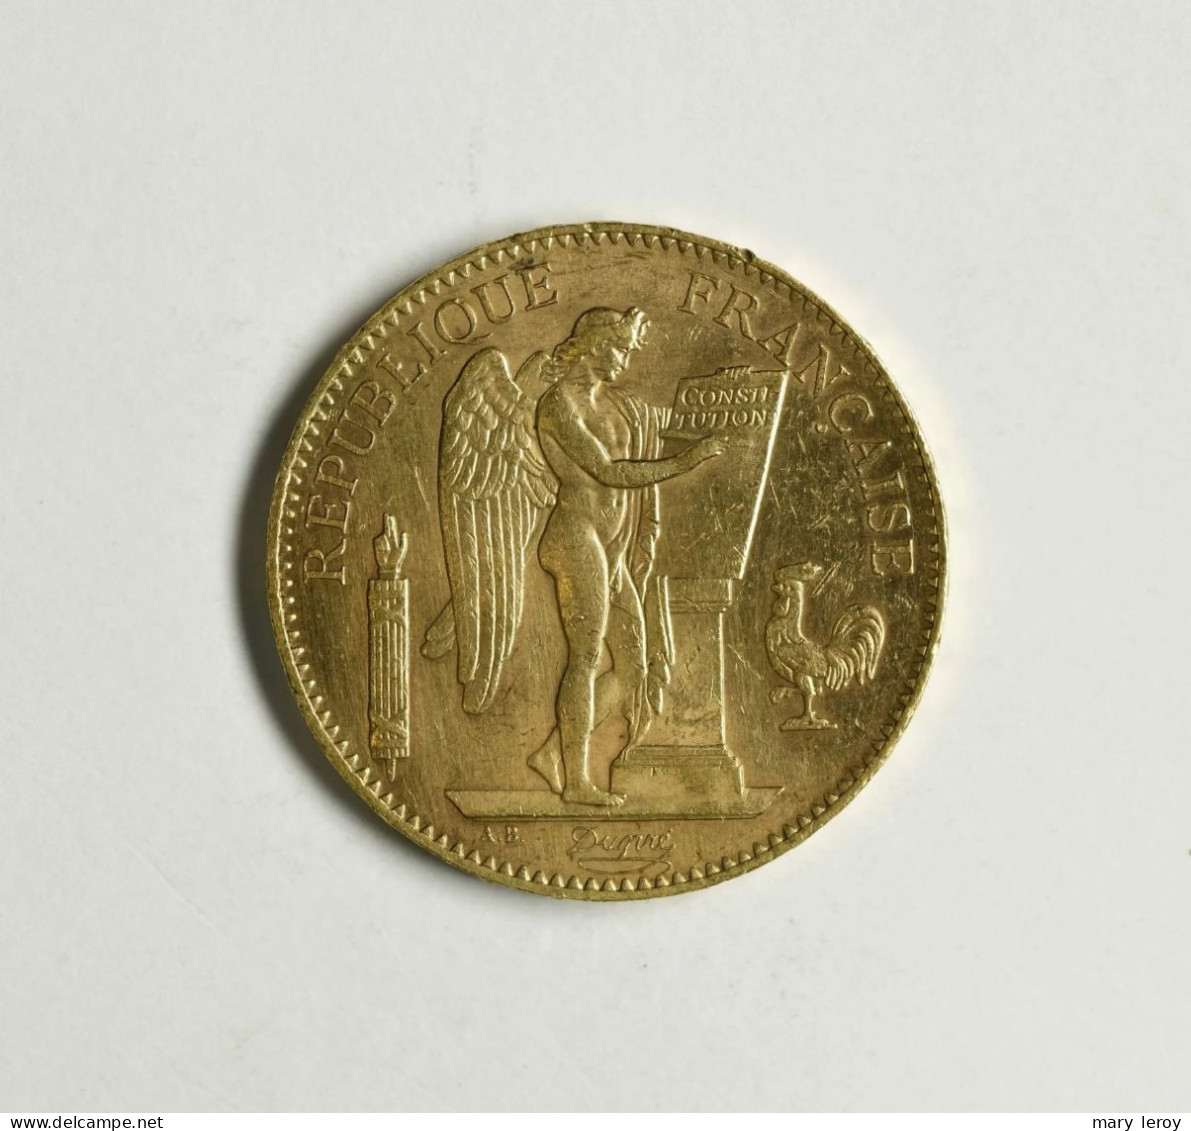 Superbe & Rare Pièce De 100 Francs Or Génie Paris 1907 G. 1137 - 100 Francs (gold)